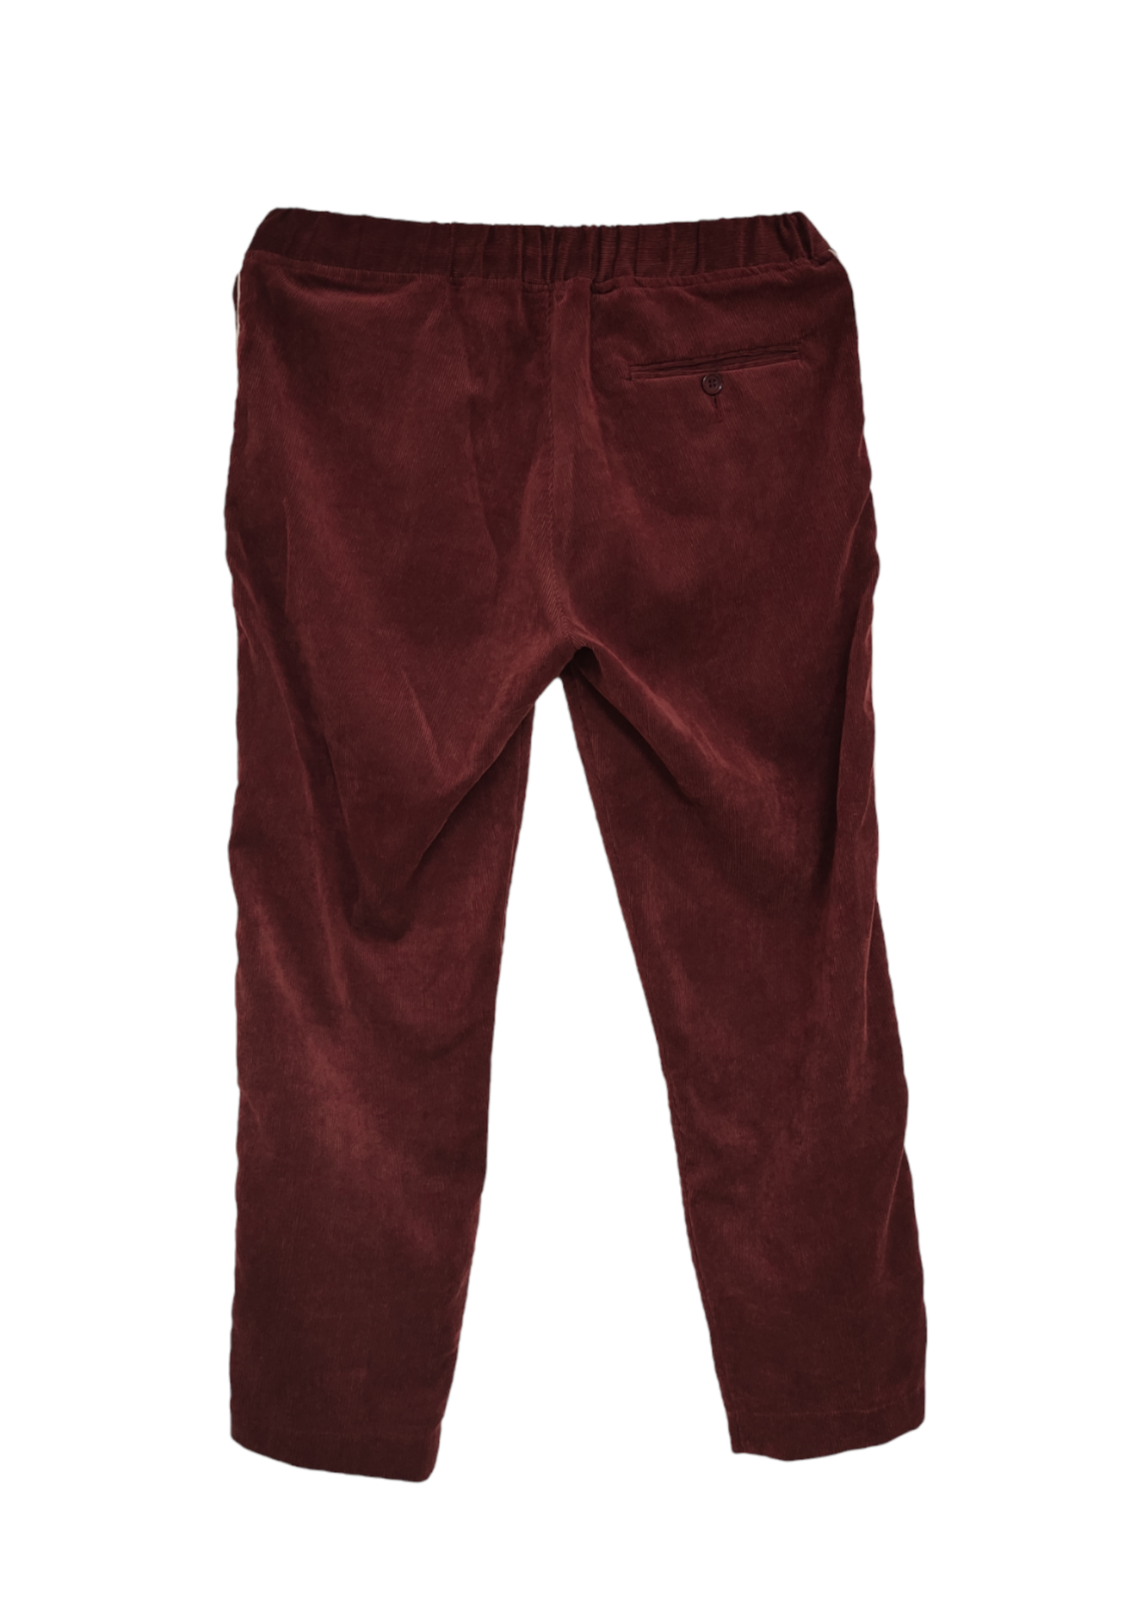 Κοτλέ Ανδρική Φόρμα - Παντελόνι BOOHOO σε Μπορντό χρώμα (S/M)